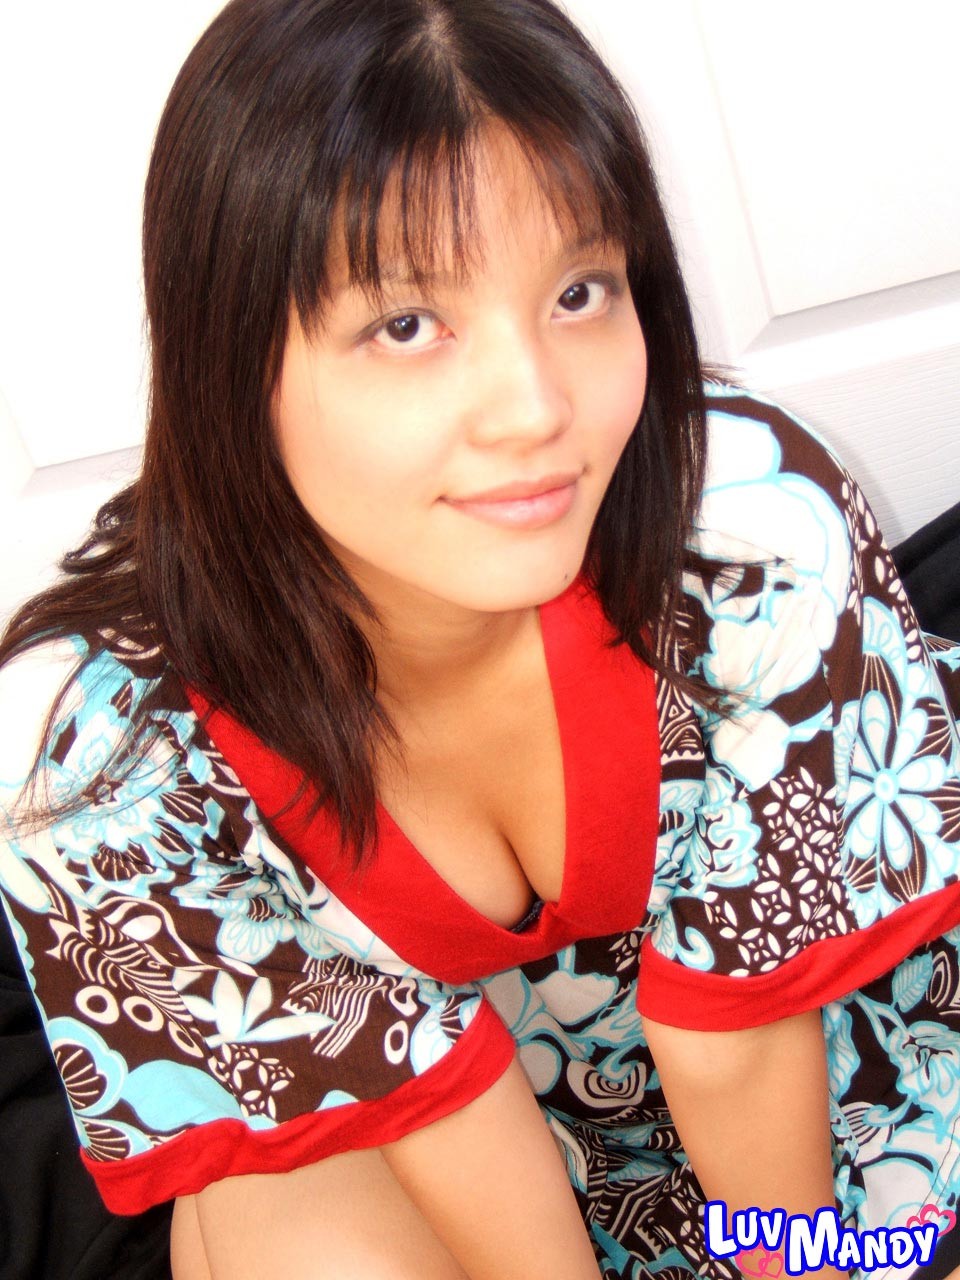 Cute asian girl next door Mandy removes dress #69967593